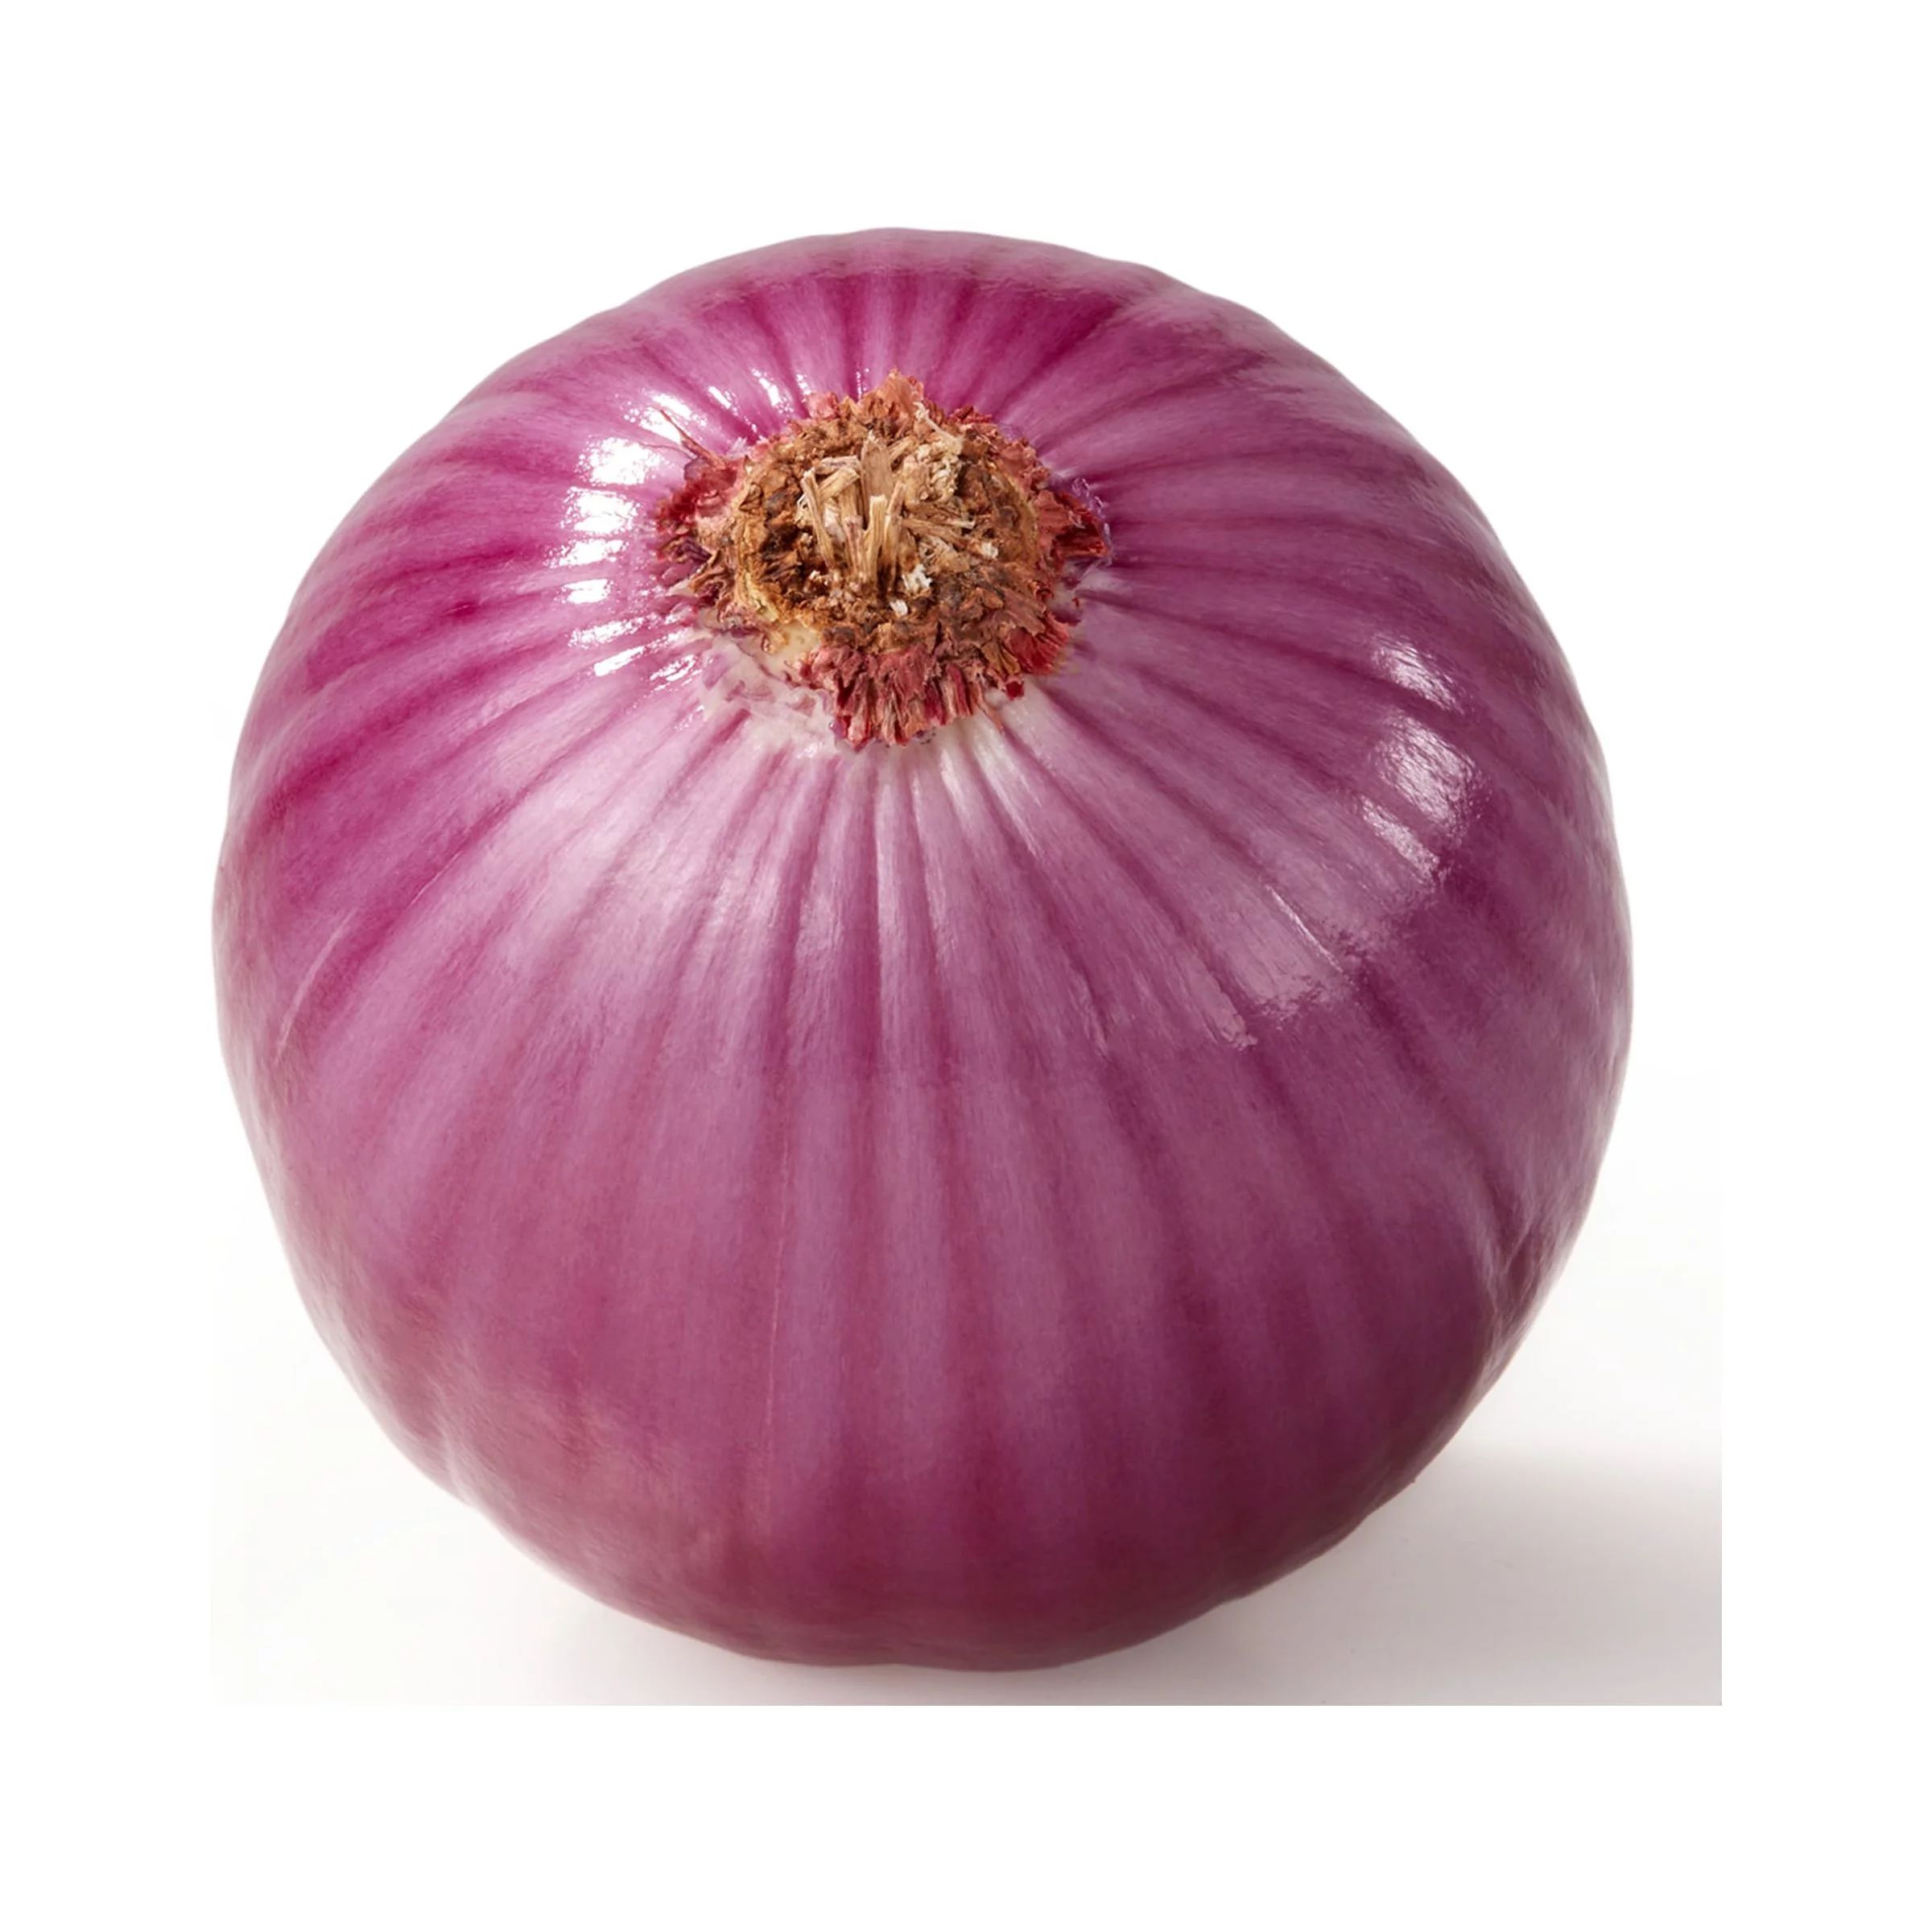 Jumbo Red Onions per Pound, Whole | Walmart (US)